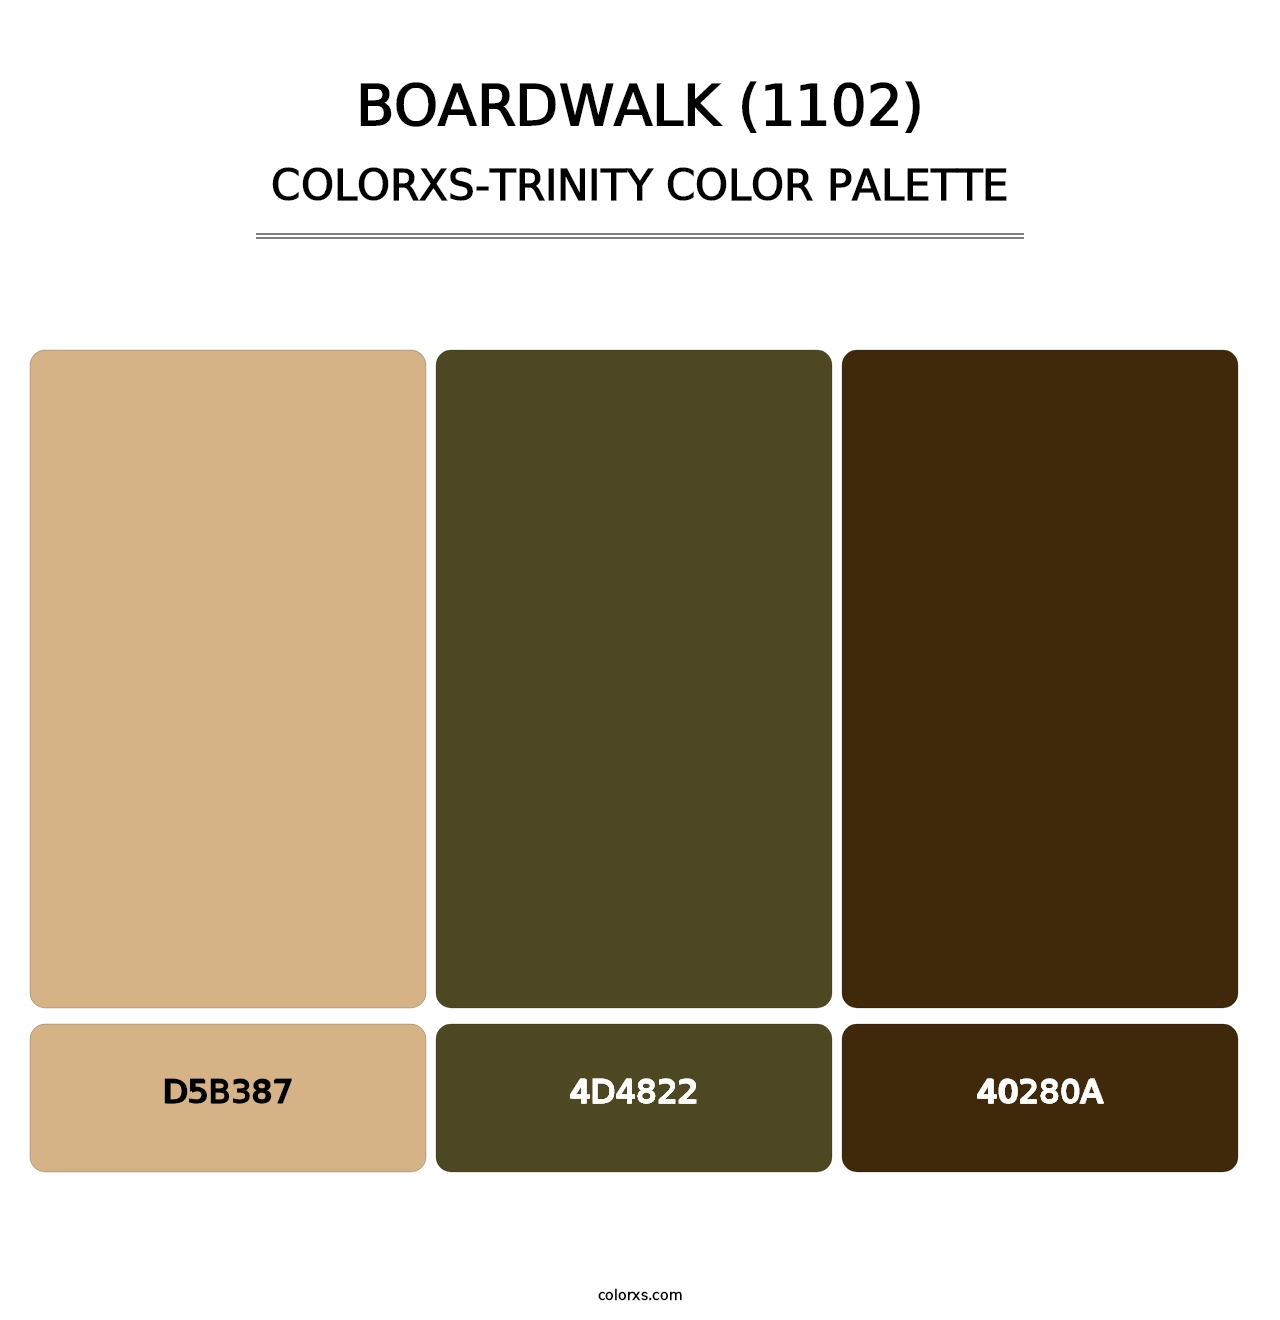 Boardwalk (1102) - Colorxs Trinity Palette